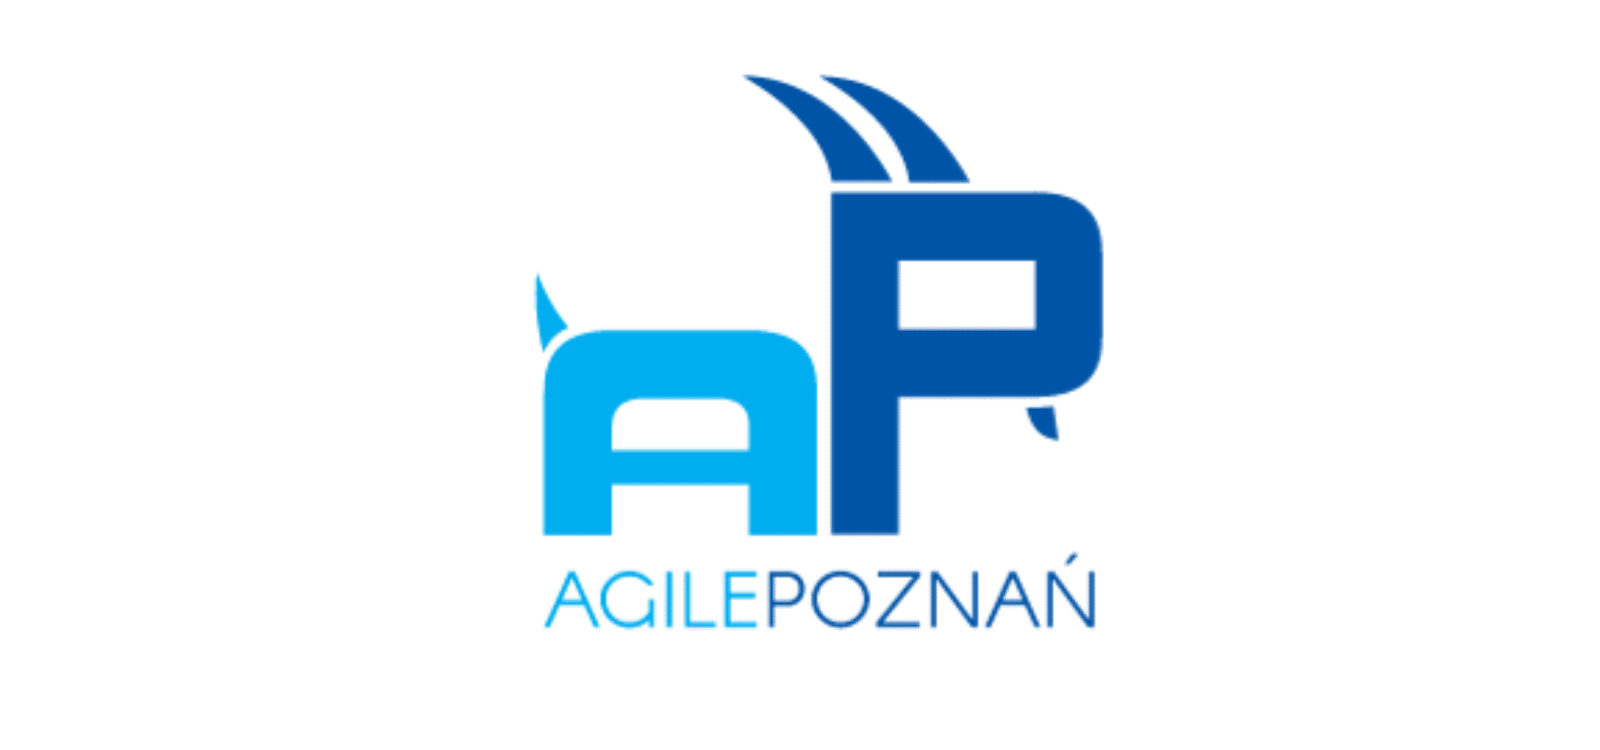 Agile Poznań logo